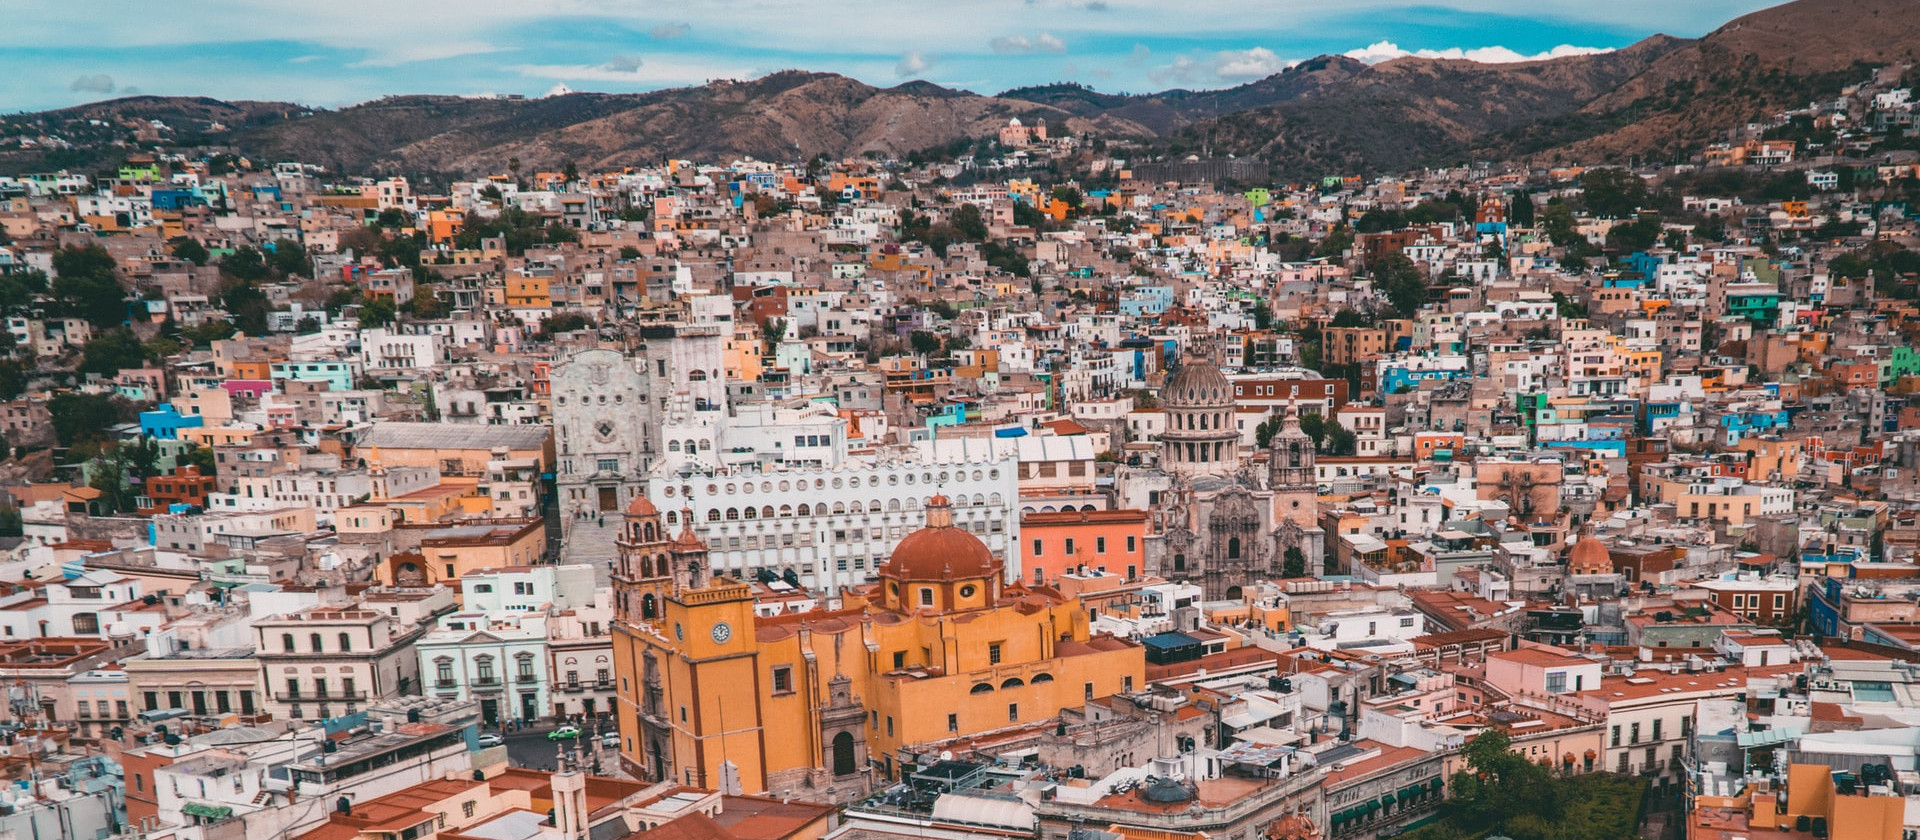 Guanajuato, Mexico skyline